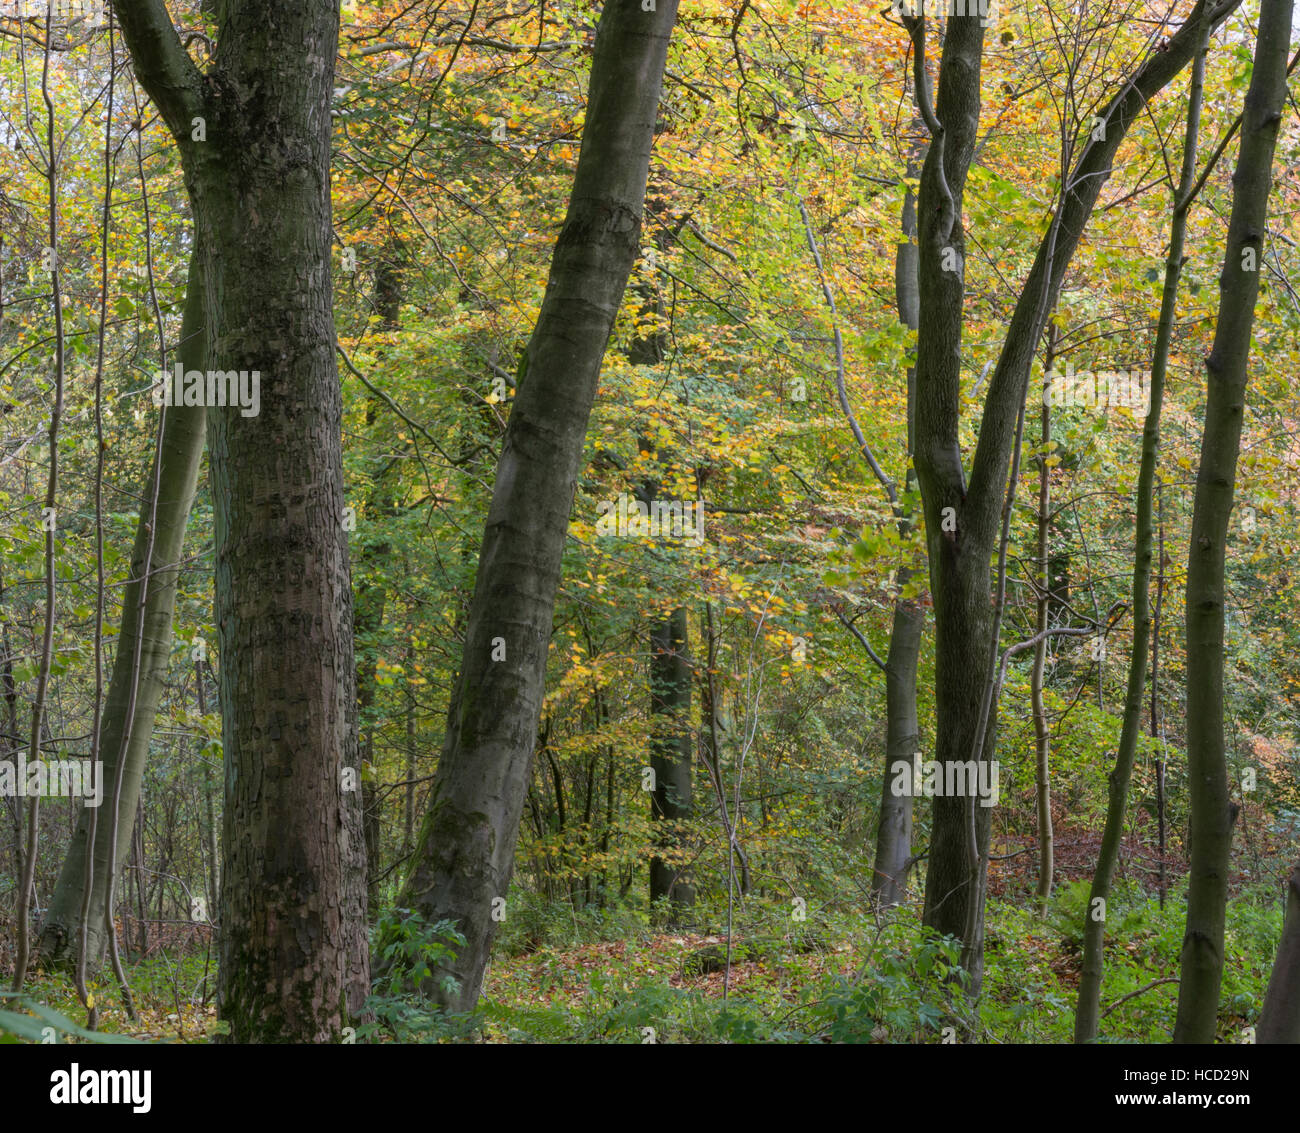 Autumn woodland scene Stock Photo